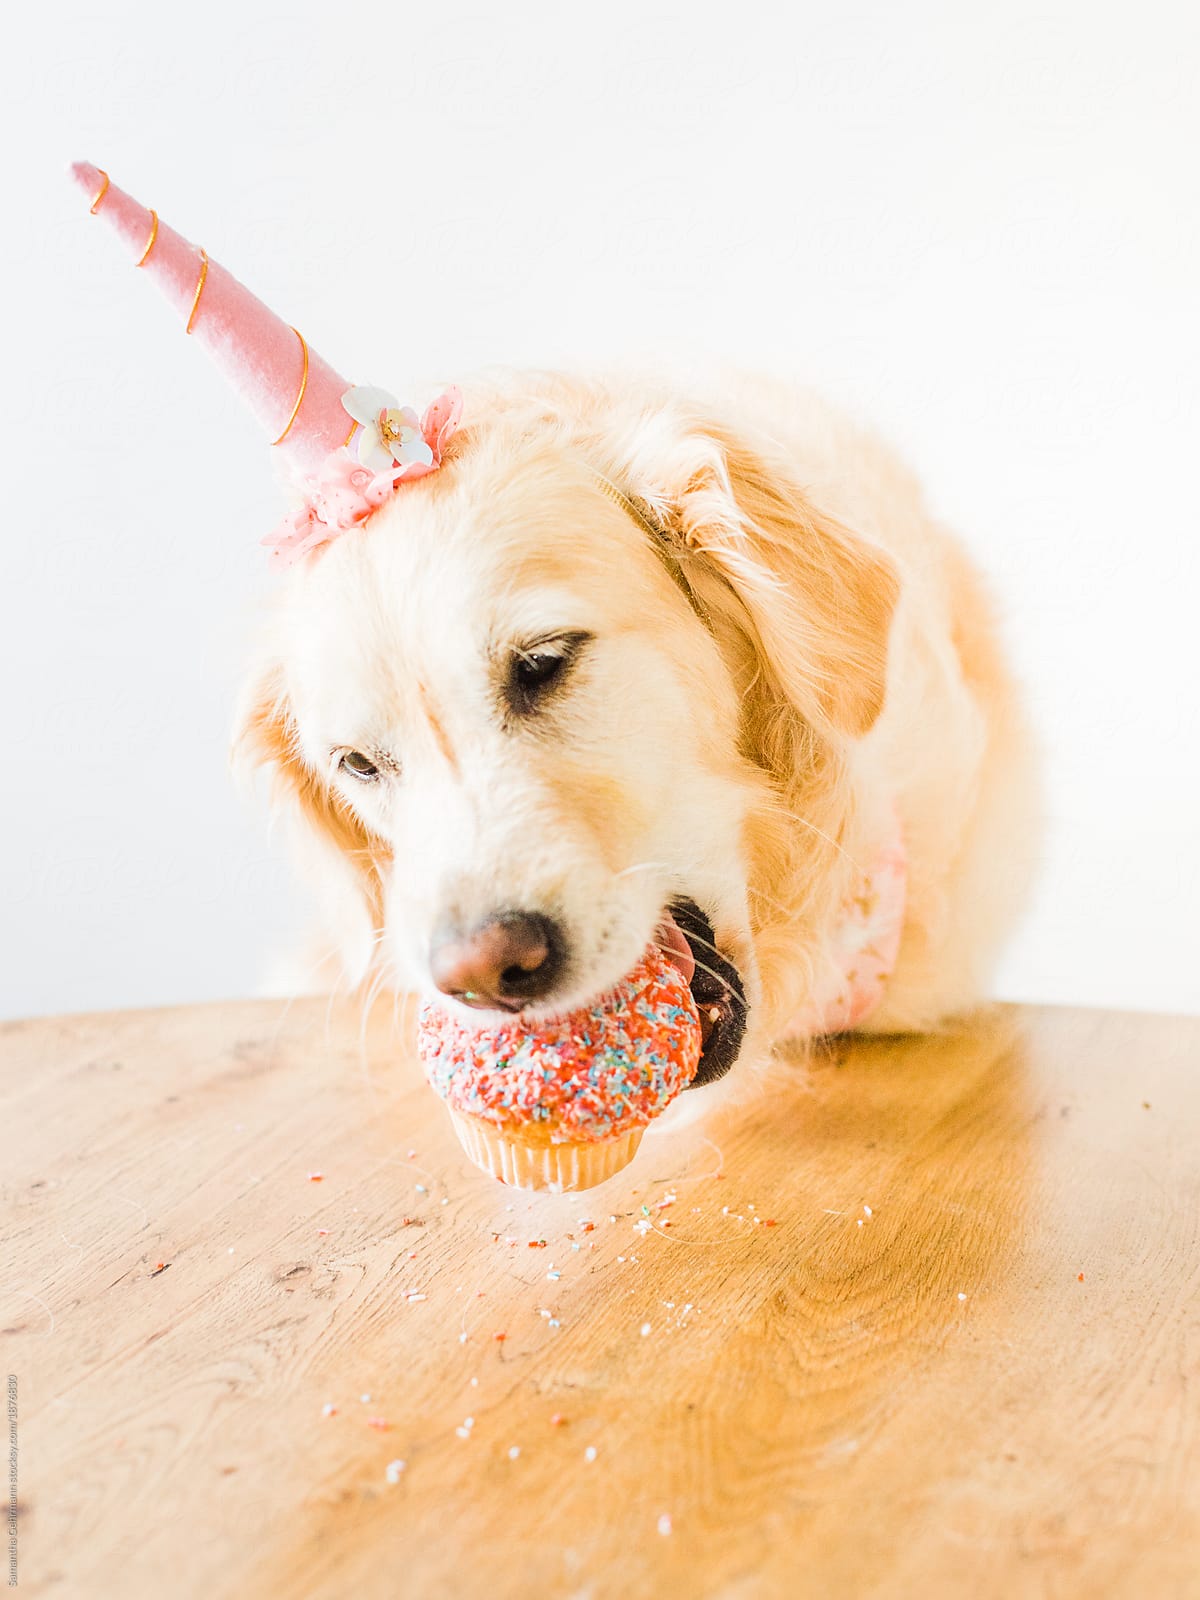 Dog eating cake for birthday